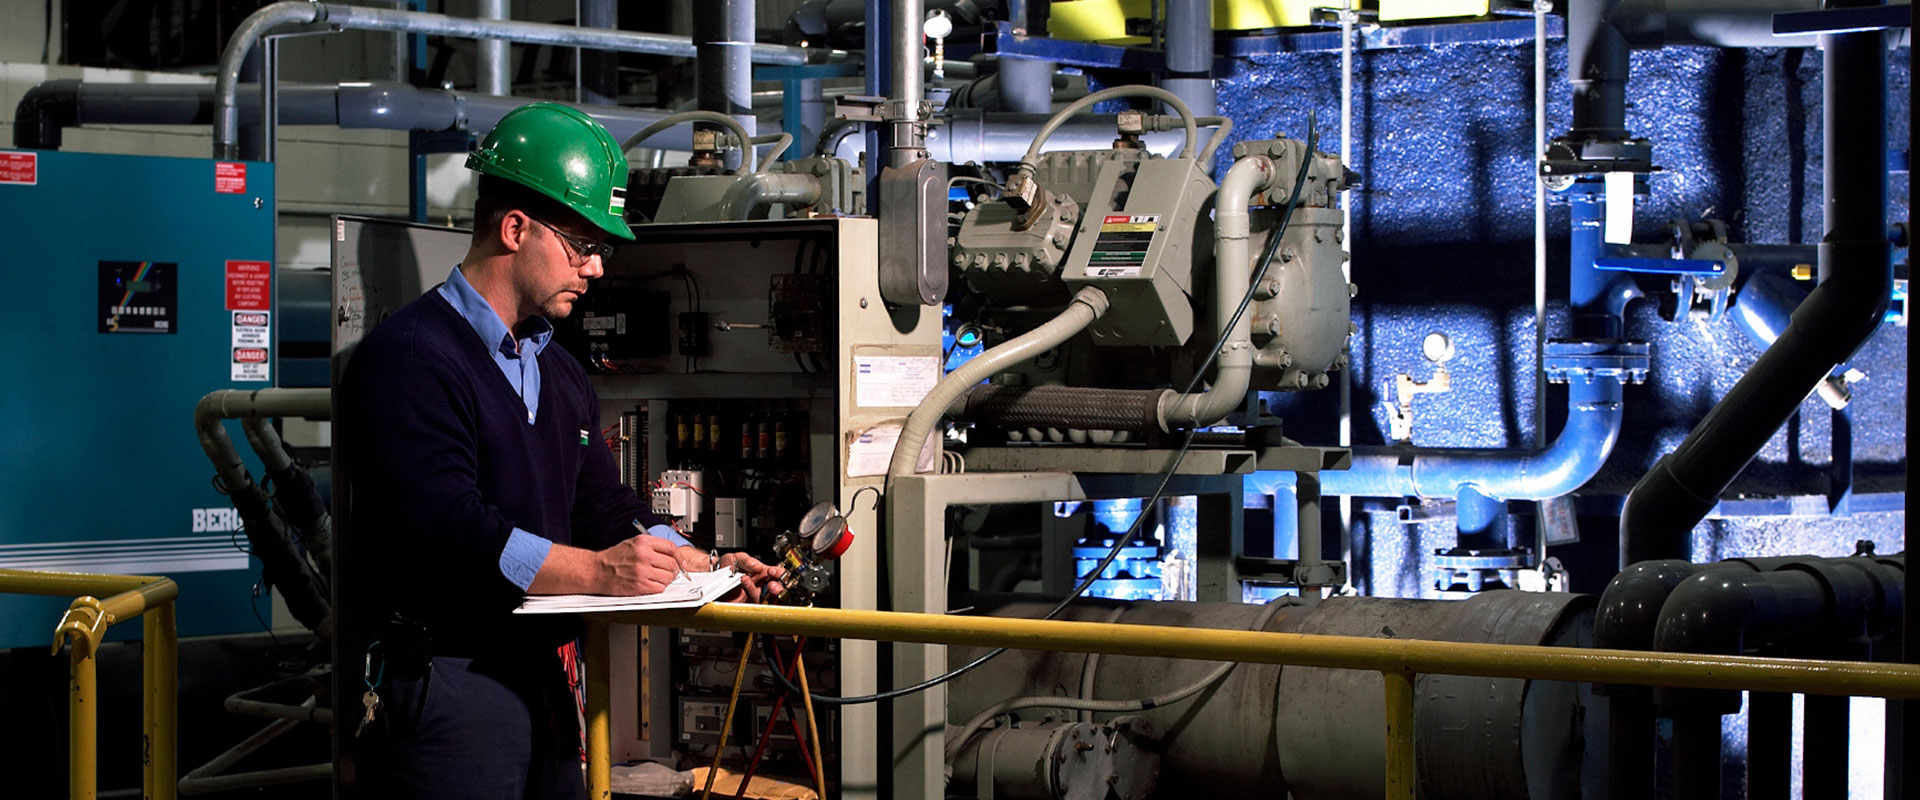 Un technicien des services de B&M inspecte le système de réfrigération et de refroidissement d’une installation industrielle